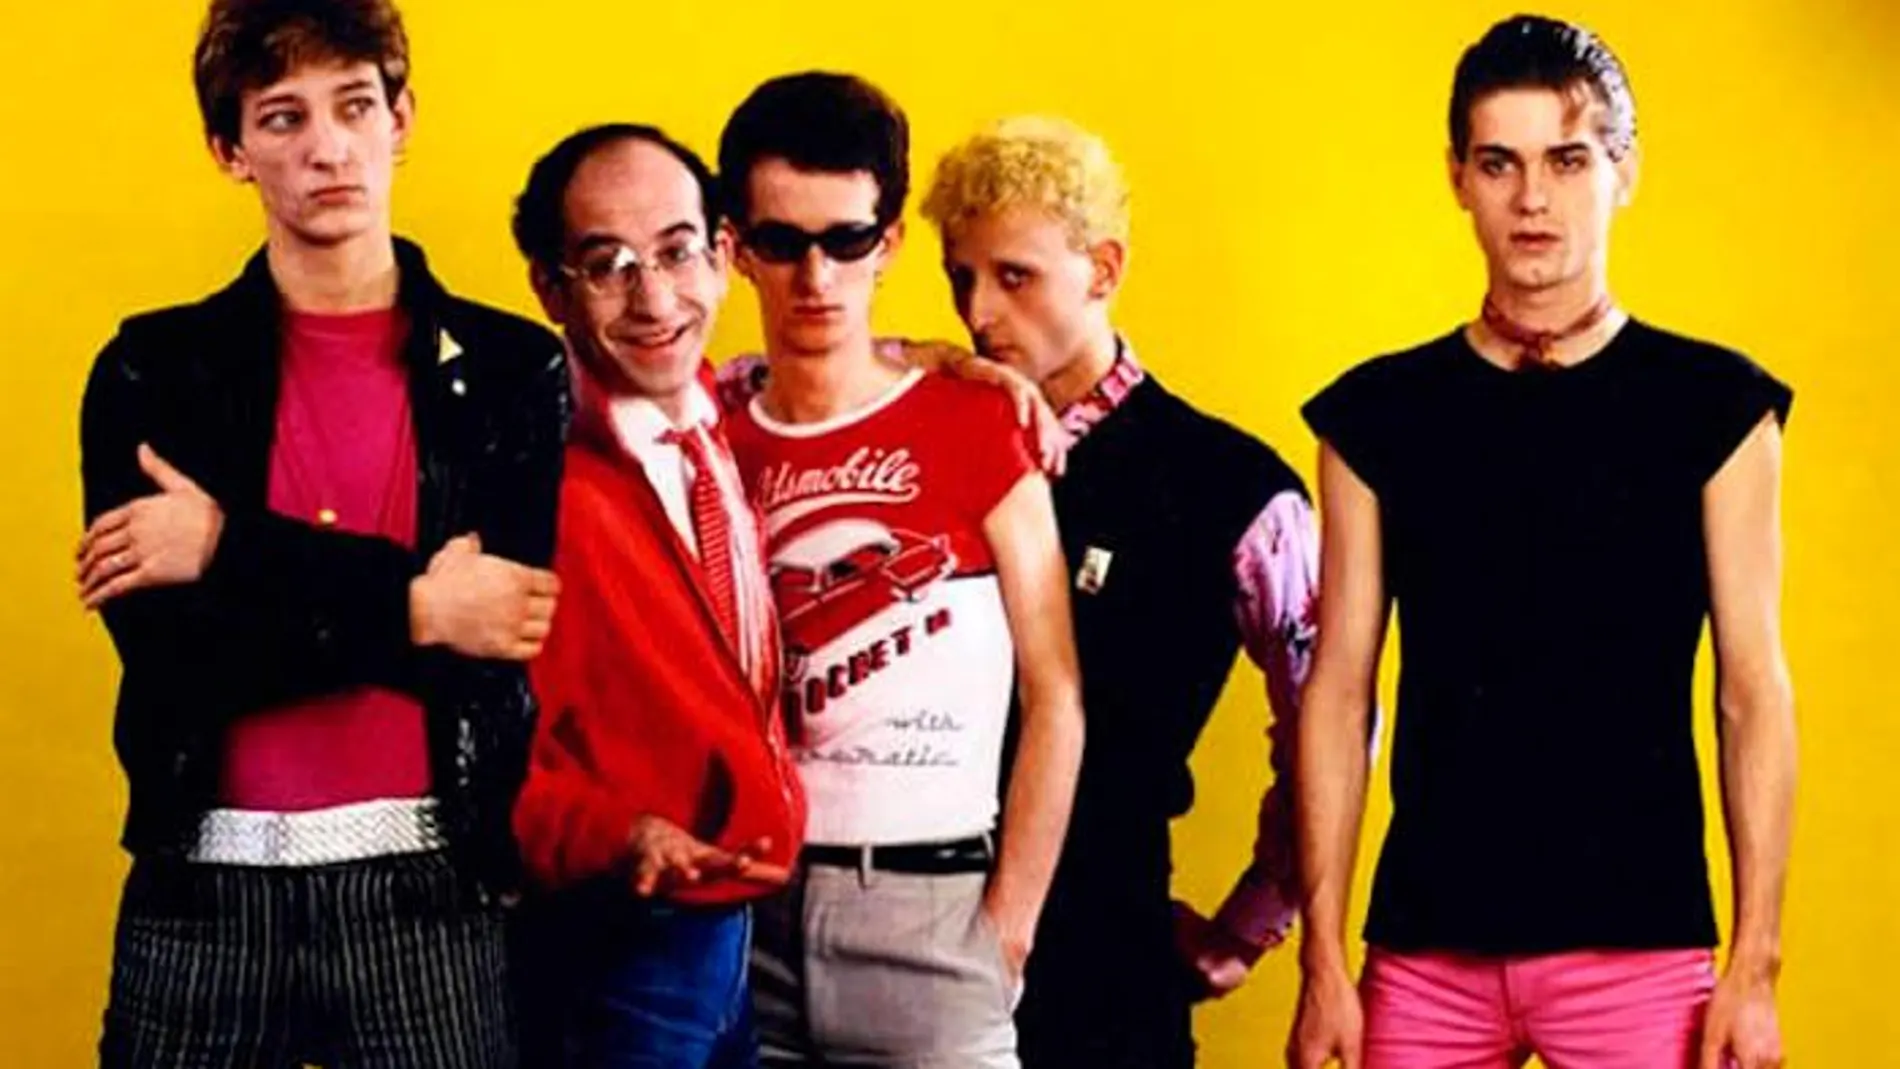 Imagen de la banda original. Pérez Grueso es el segundo por la derecha tras Auserón